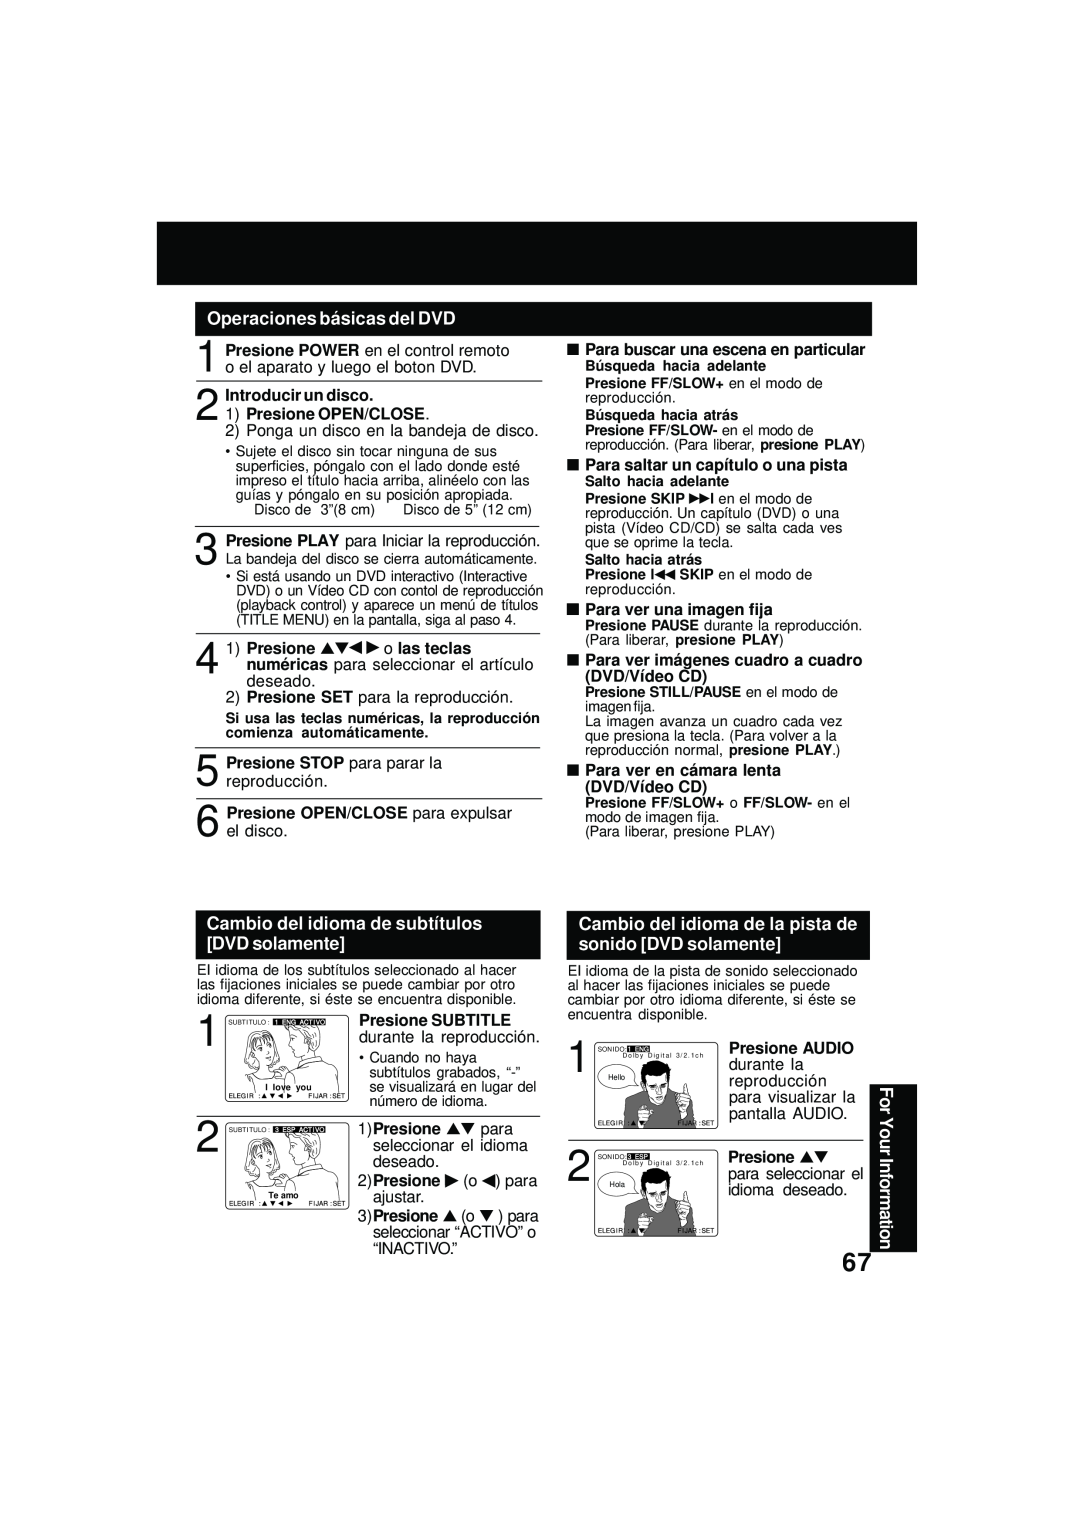 Panasonic PV DM2092 manual Operaciones básicas del DVD, Cambio del idioma de subtítulos DVD solamente, Presione SUBTITLE 